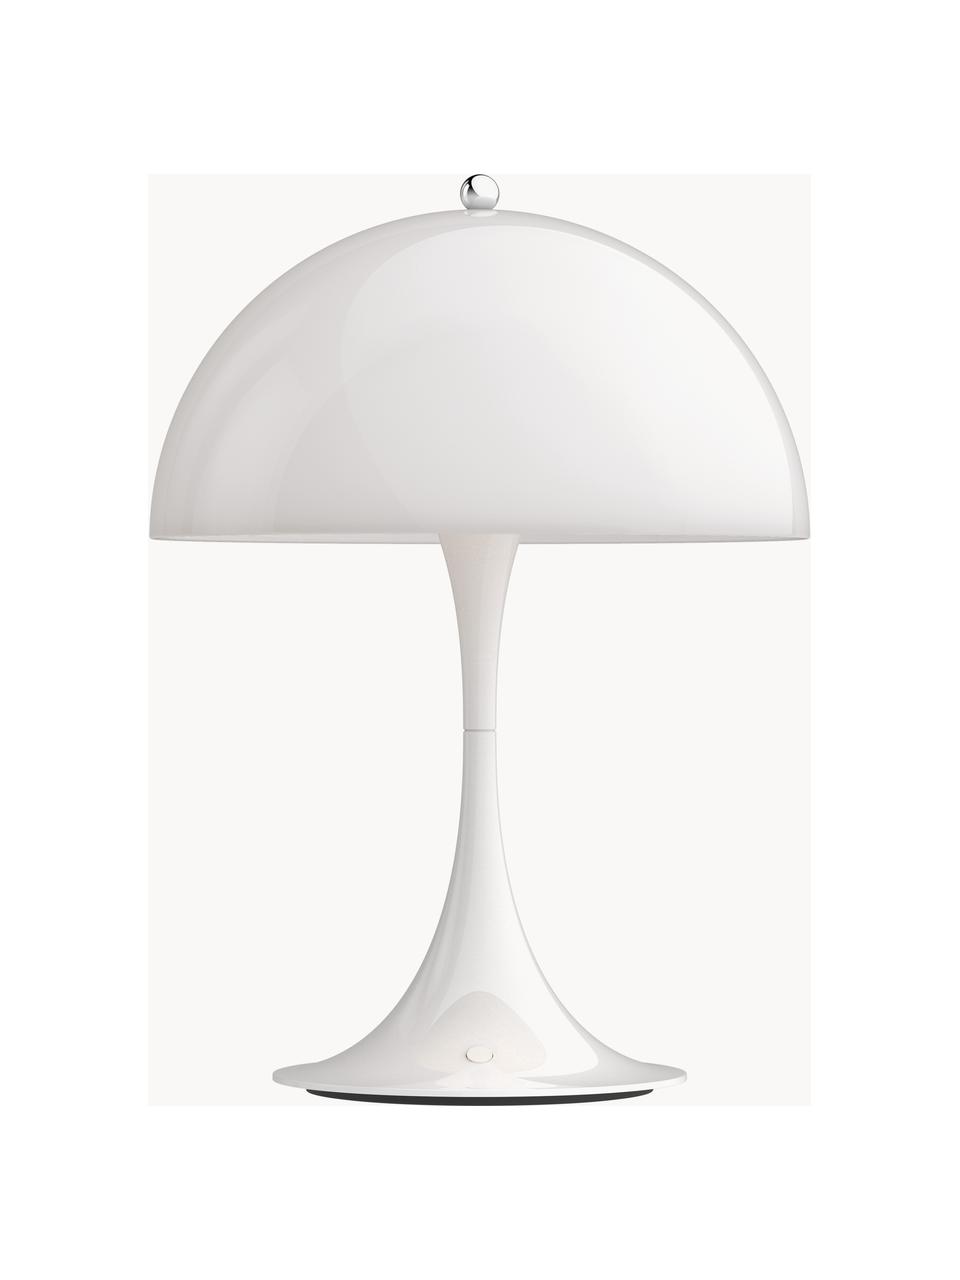 Mobilna lampa stołowa LED z funkcją przyciemniania Panthella, W 34 cm, Stelaż: aluminium powlekane, Biały, Ø 25 x 34 cm